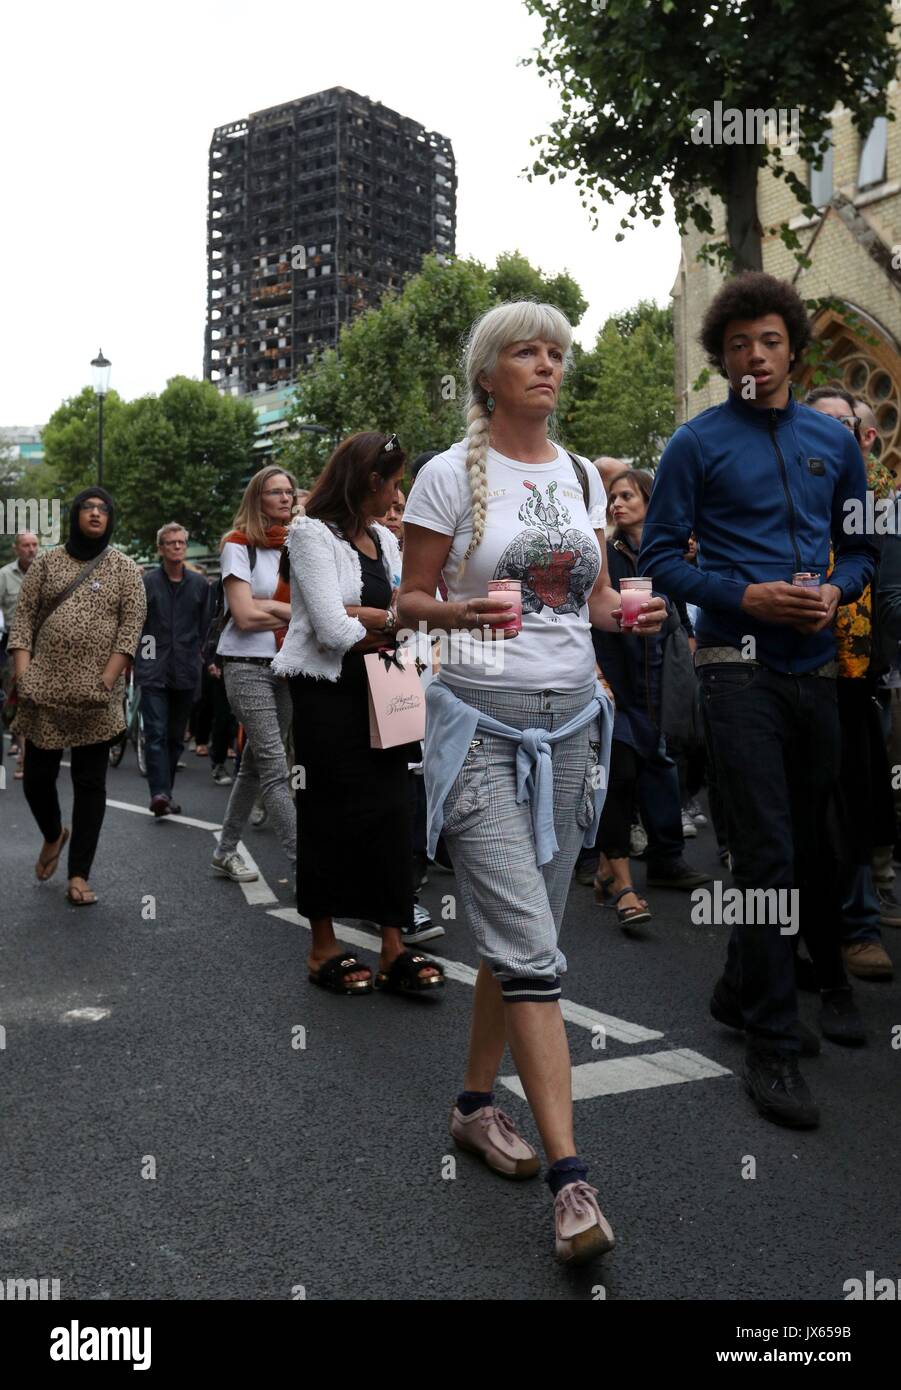 Una marcha silenciosa para honrar a quienes murieron en el desastre de la torre Grenfell comienza en la Iglesia Metodista de Notting Hill en Londres, rumbo a Ladbroke Grove. Foto de stock